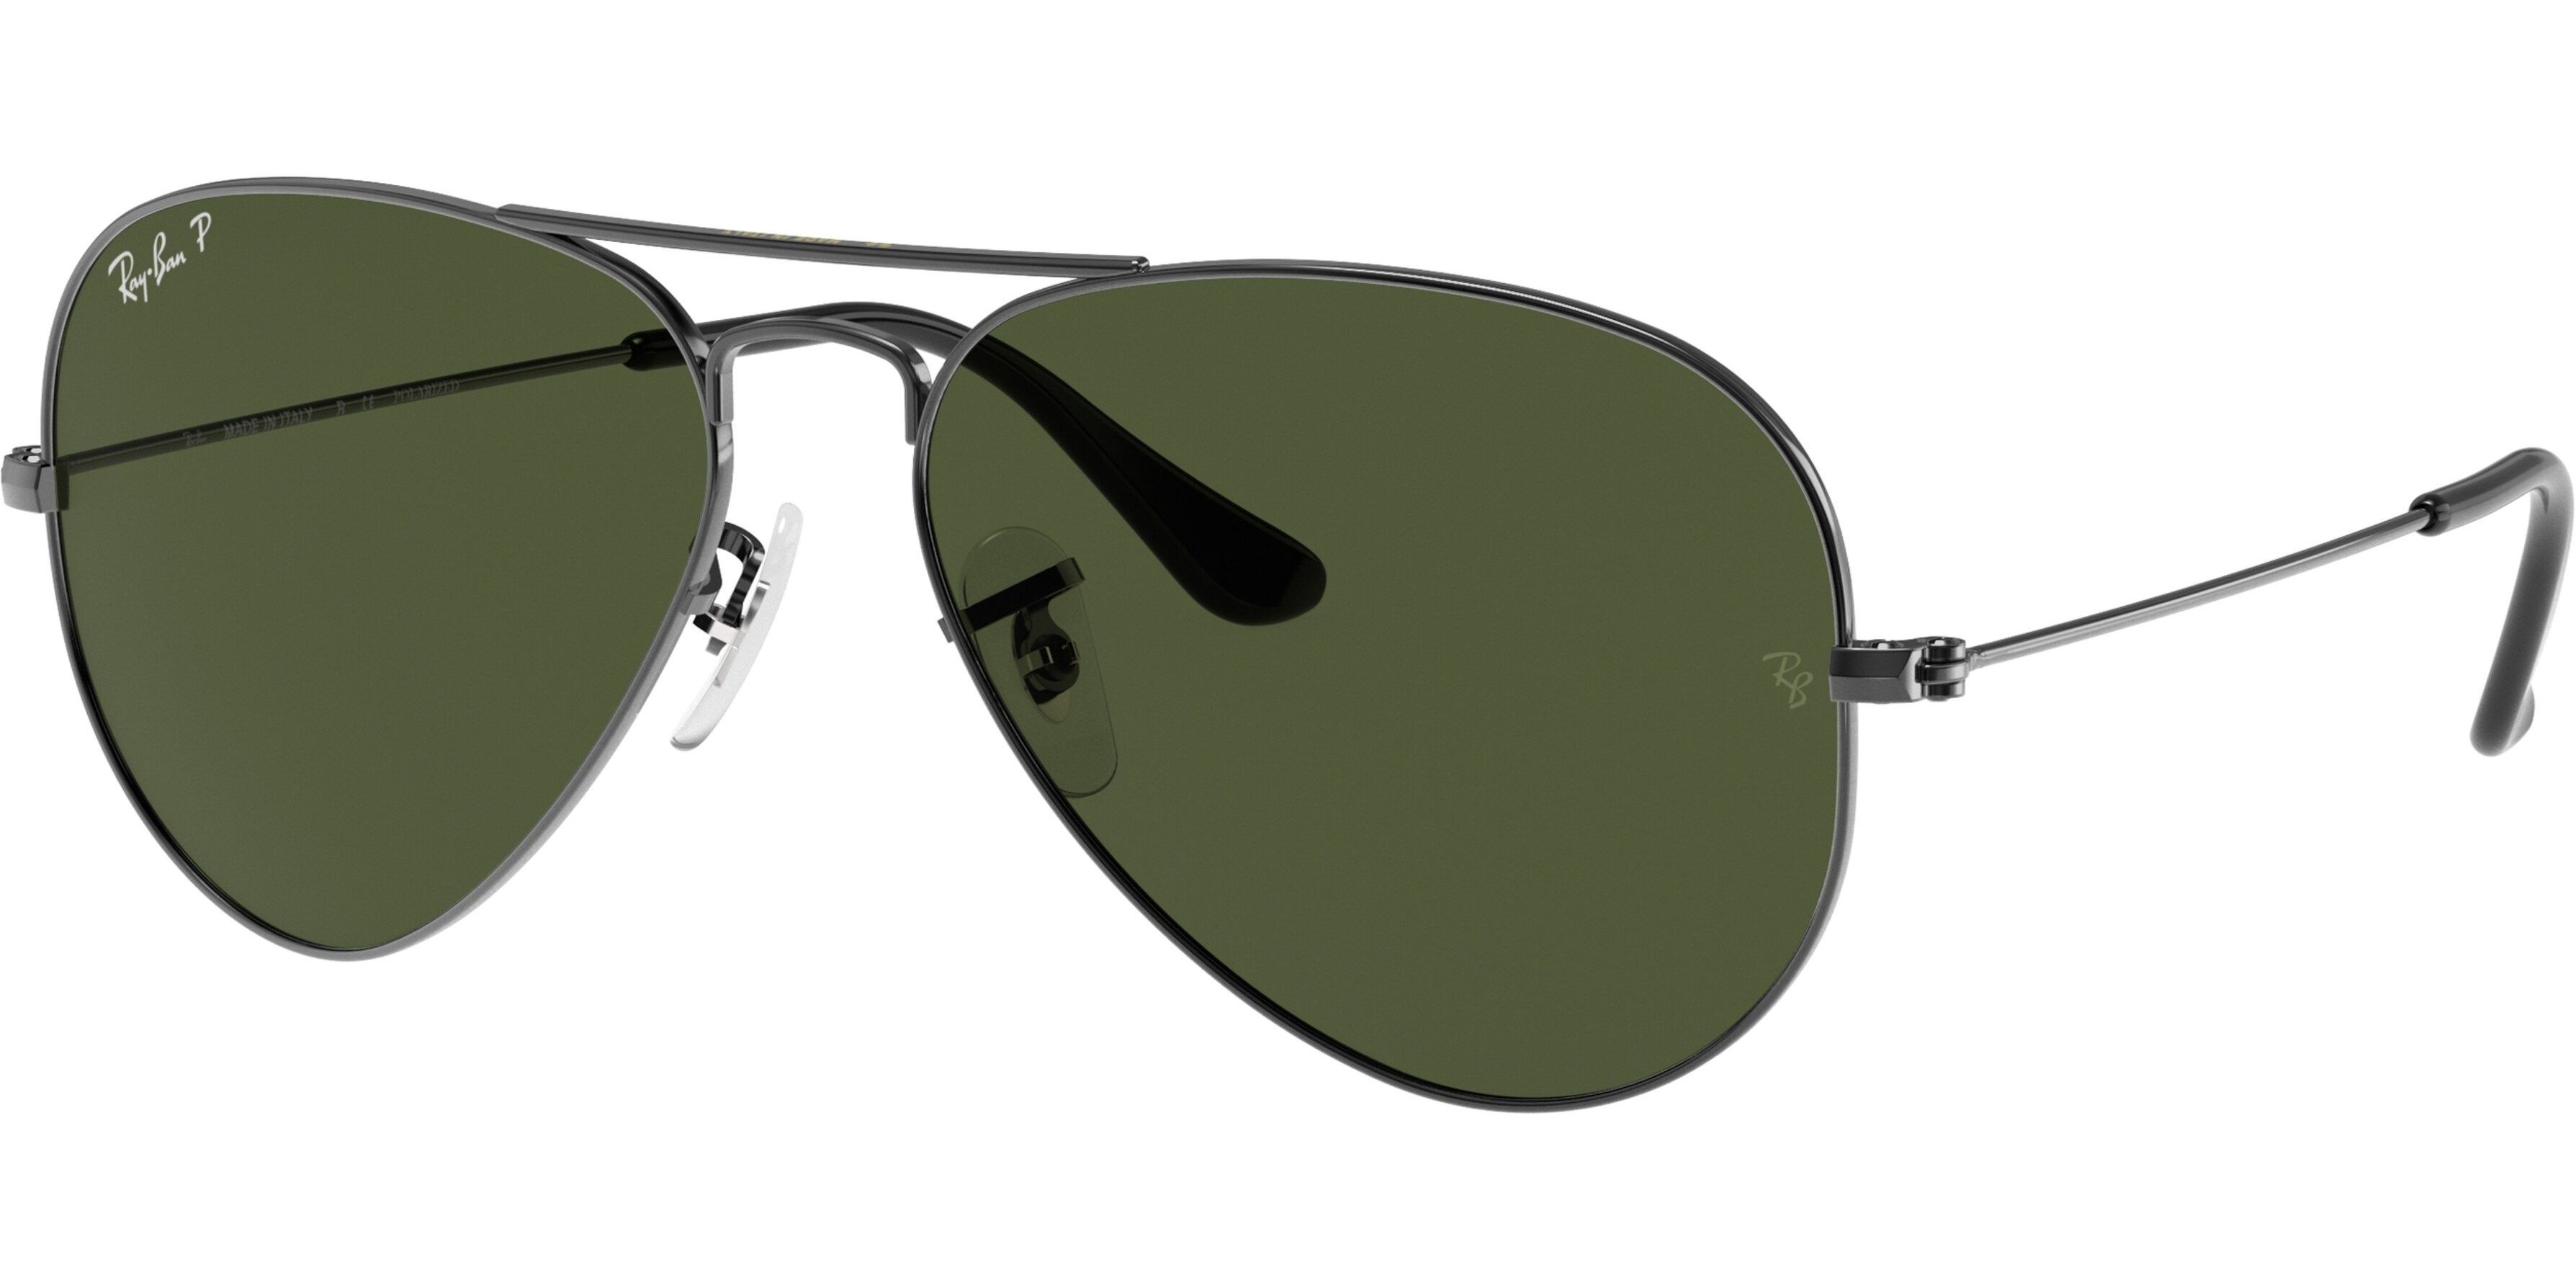 Sluneční brýle Ray-Ban® model 3025, barva obruby stříbrná, čočka zelená polarizovaná, kód barevné varianty 00458. 